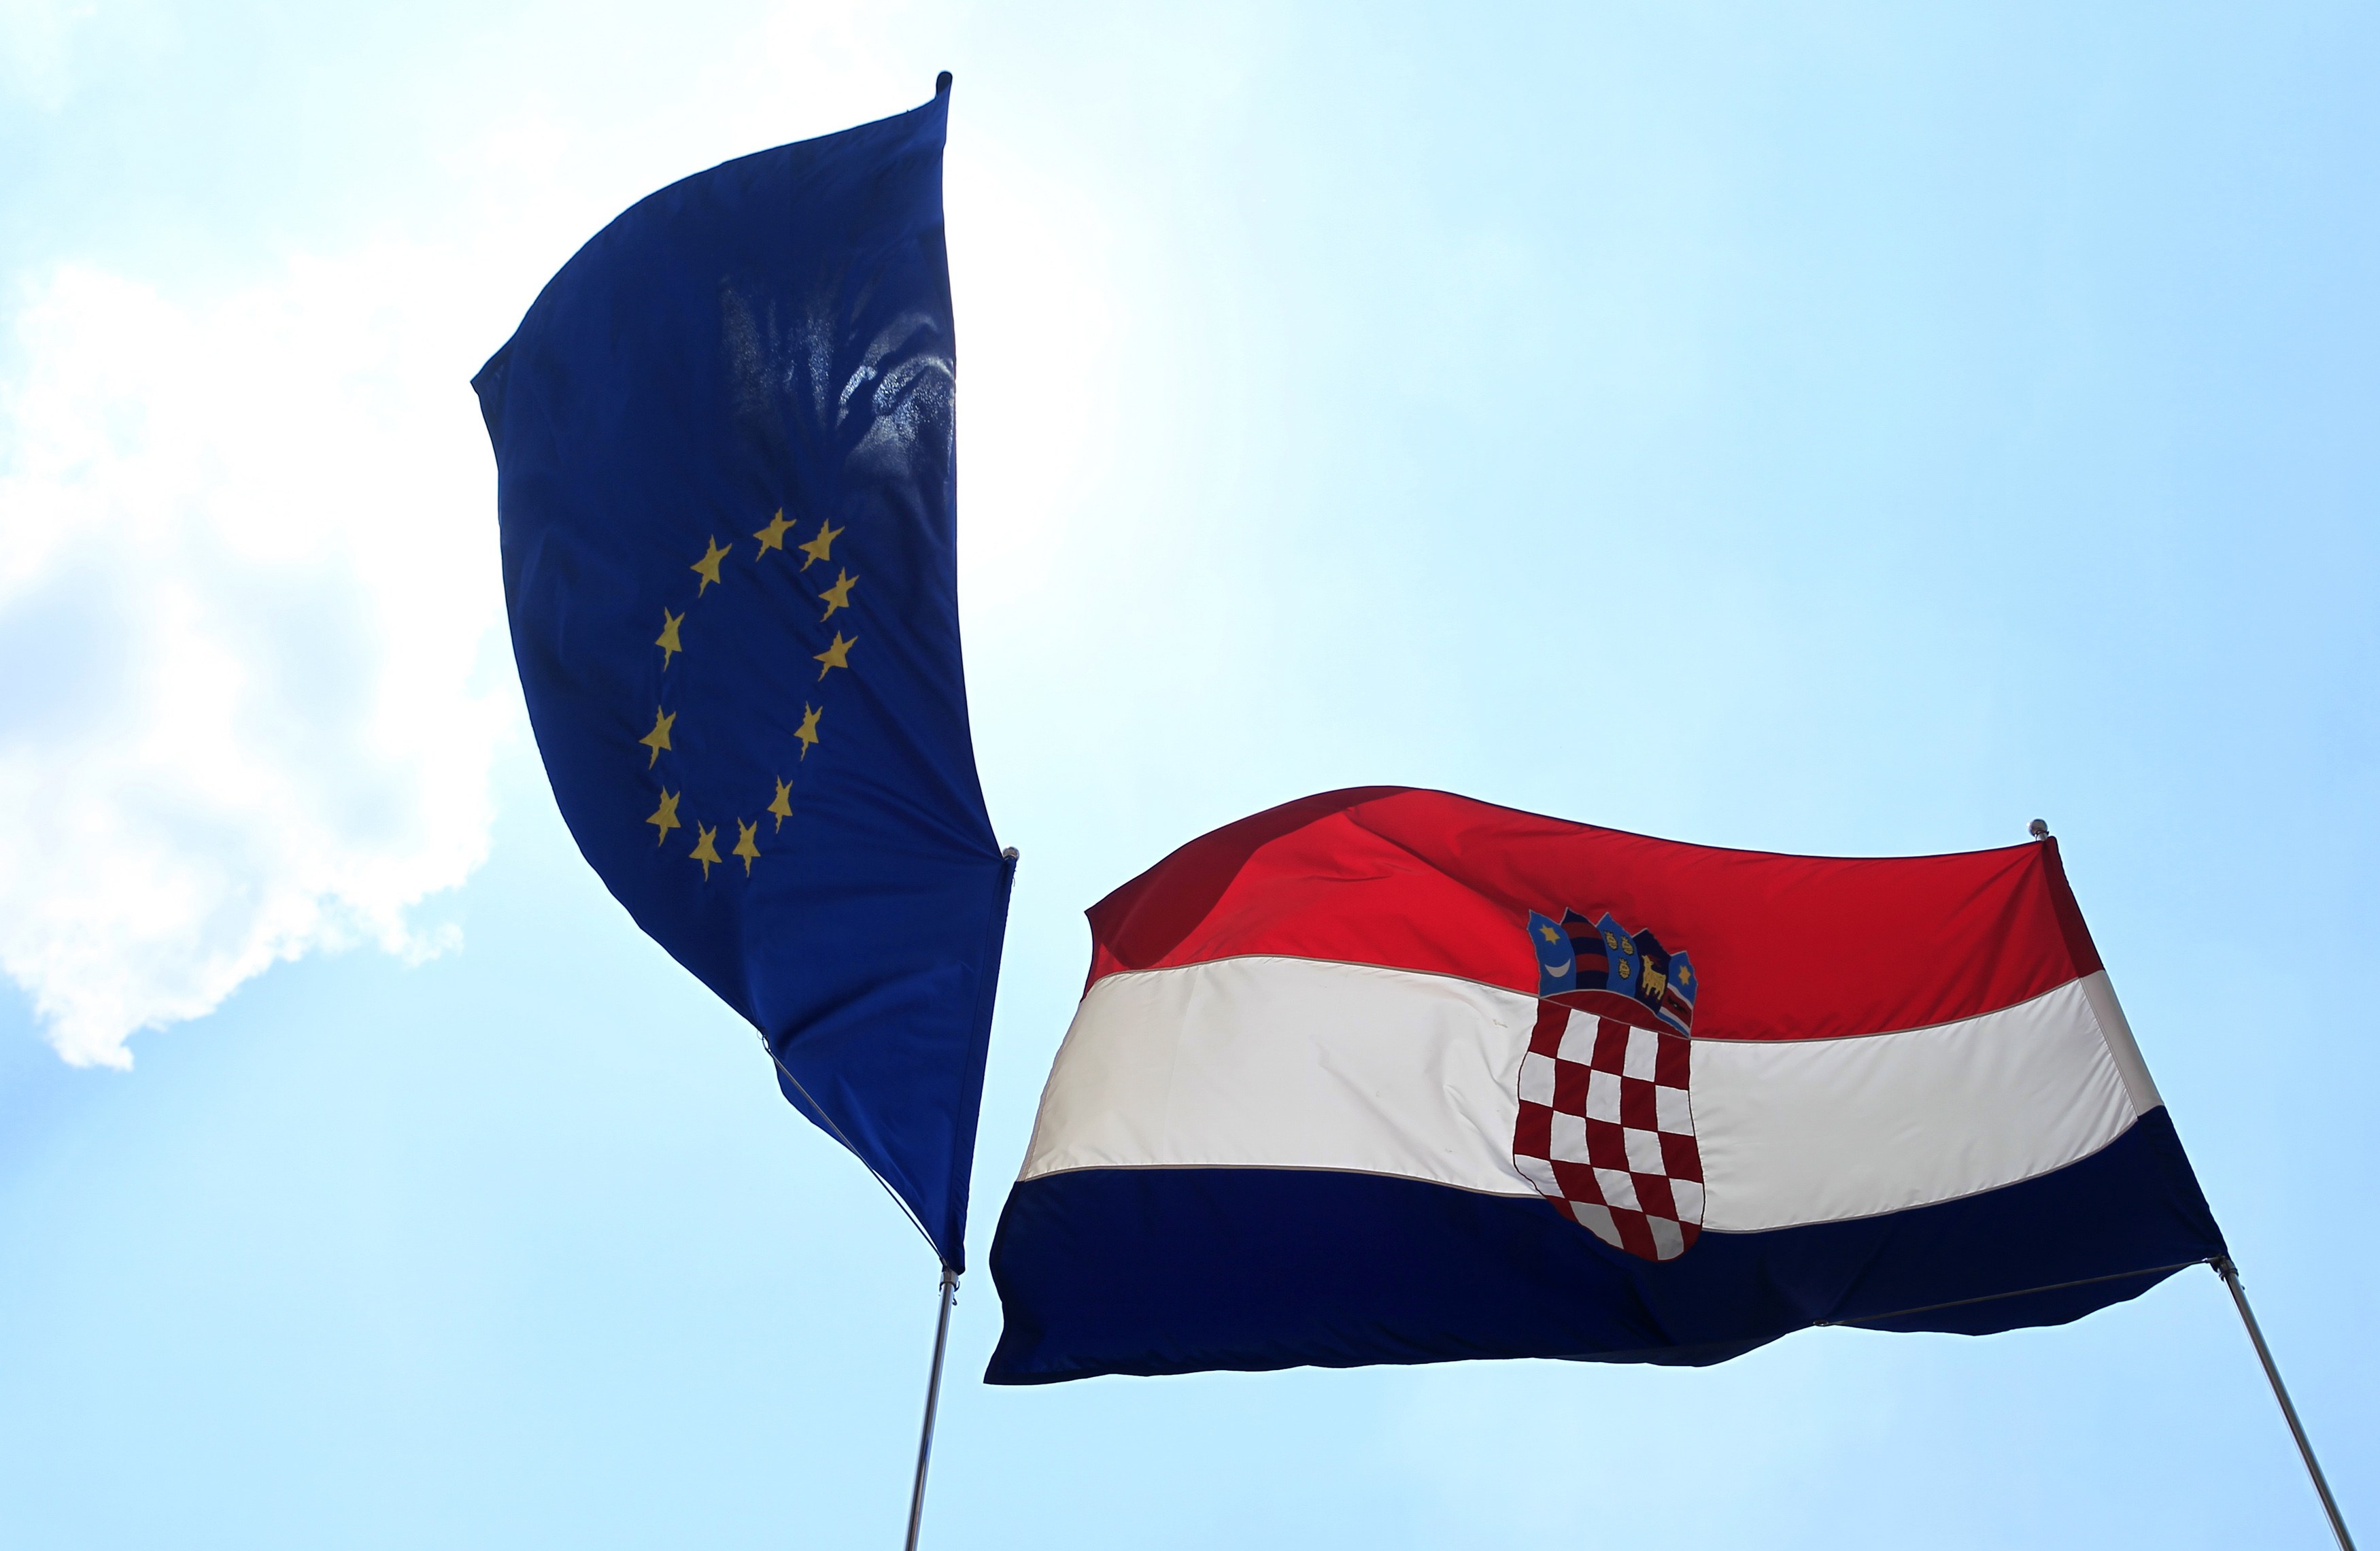 Κροάτες ευρωβουλευτές ζητούν την επιστροφή πολιτιστικών αγαθών στη χώρα